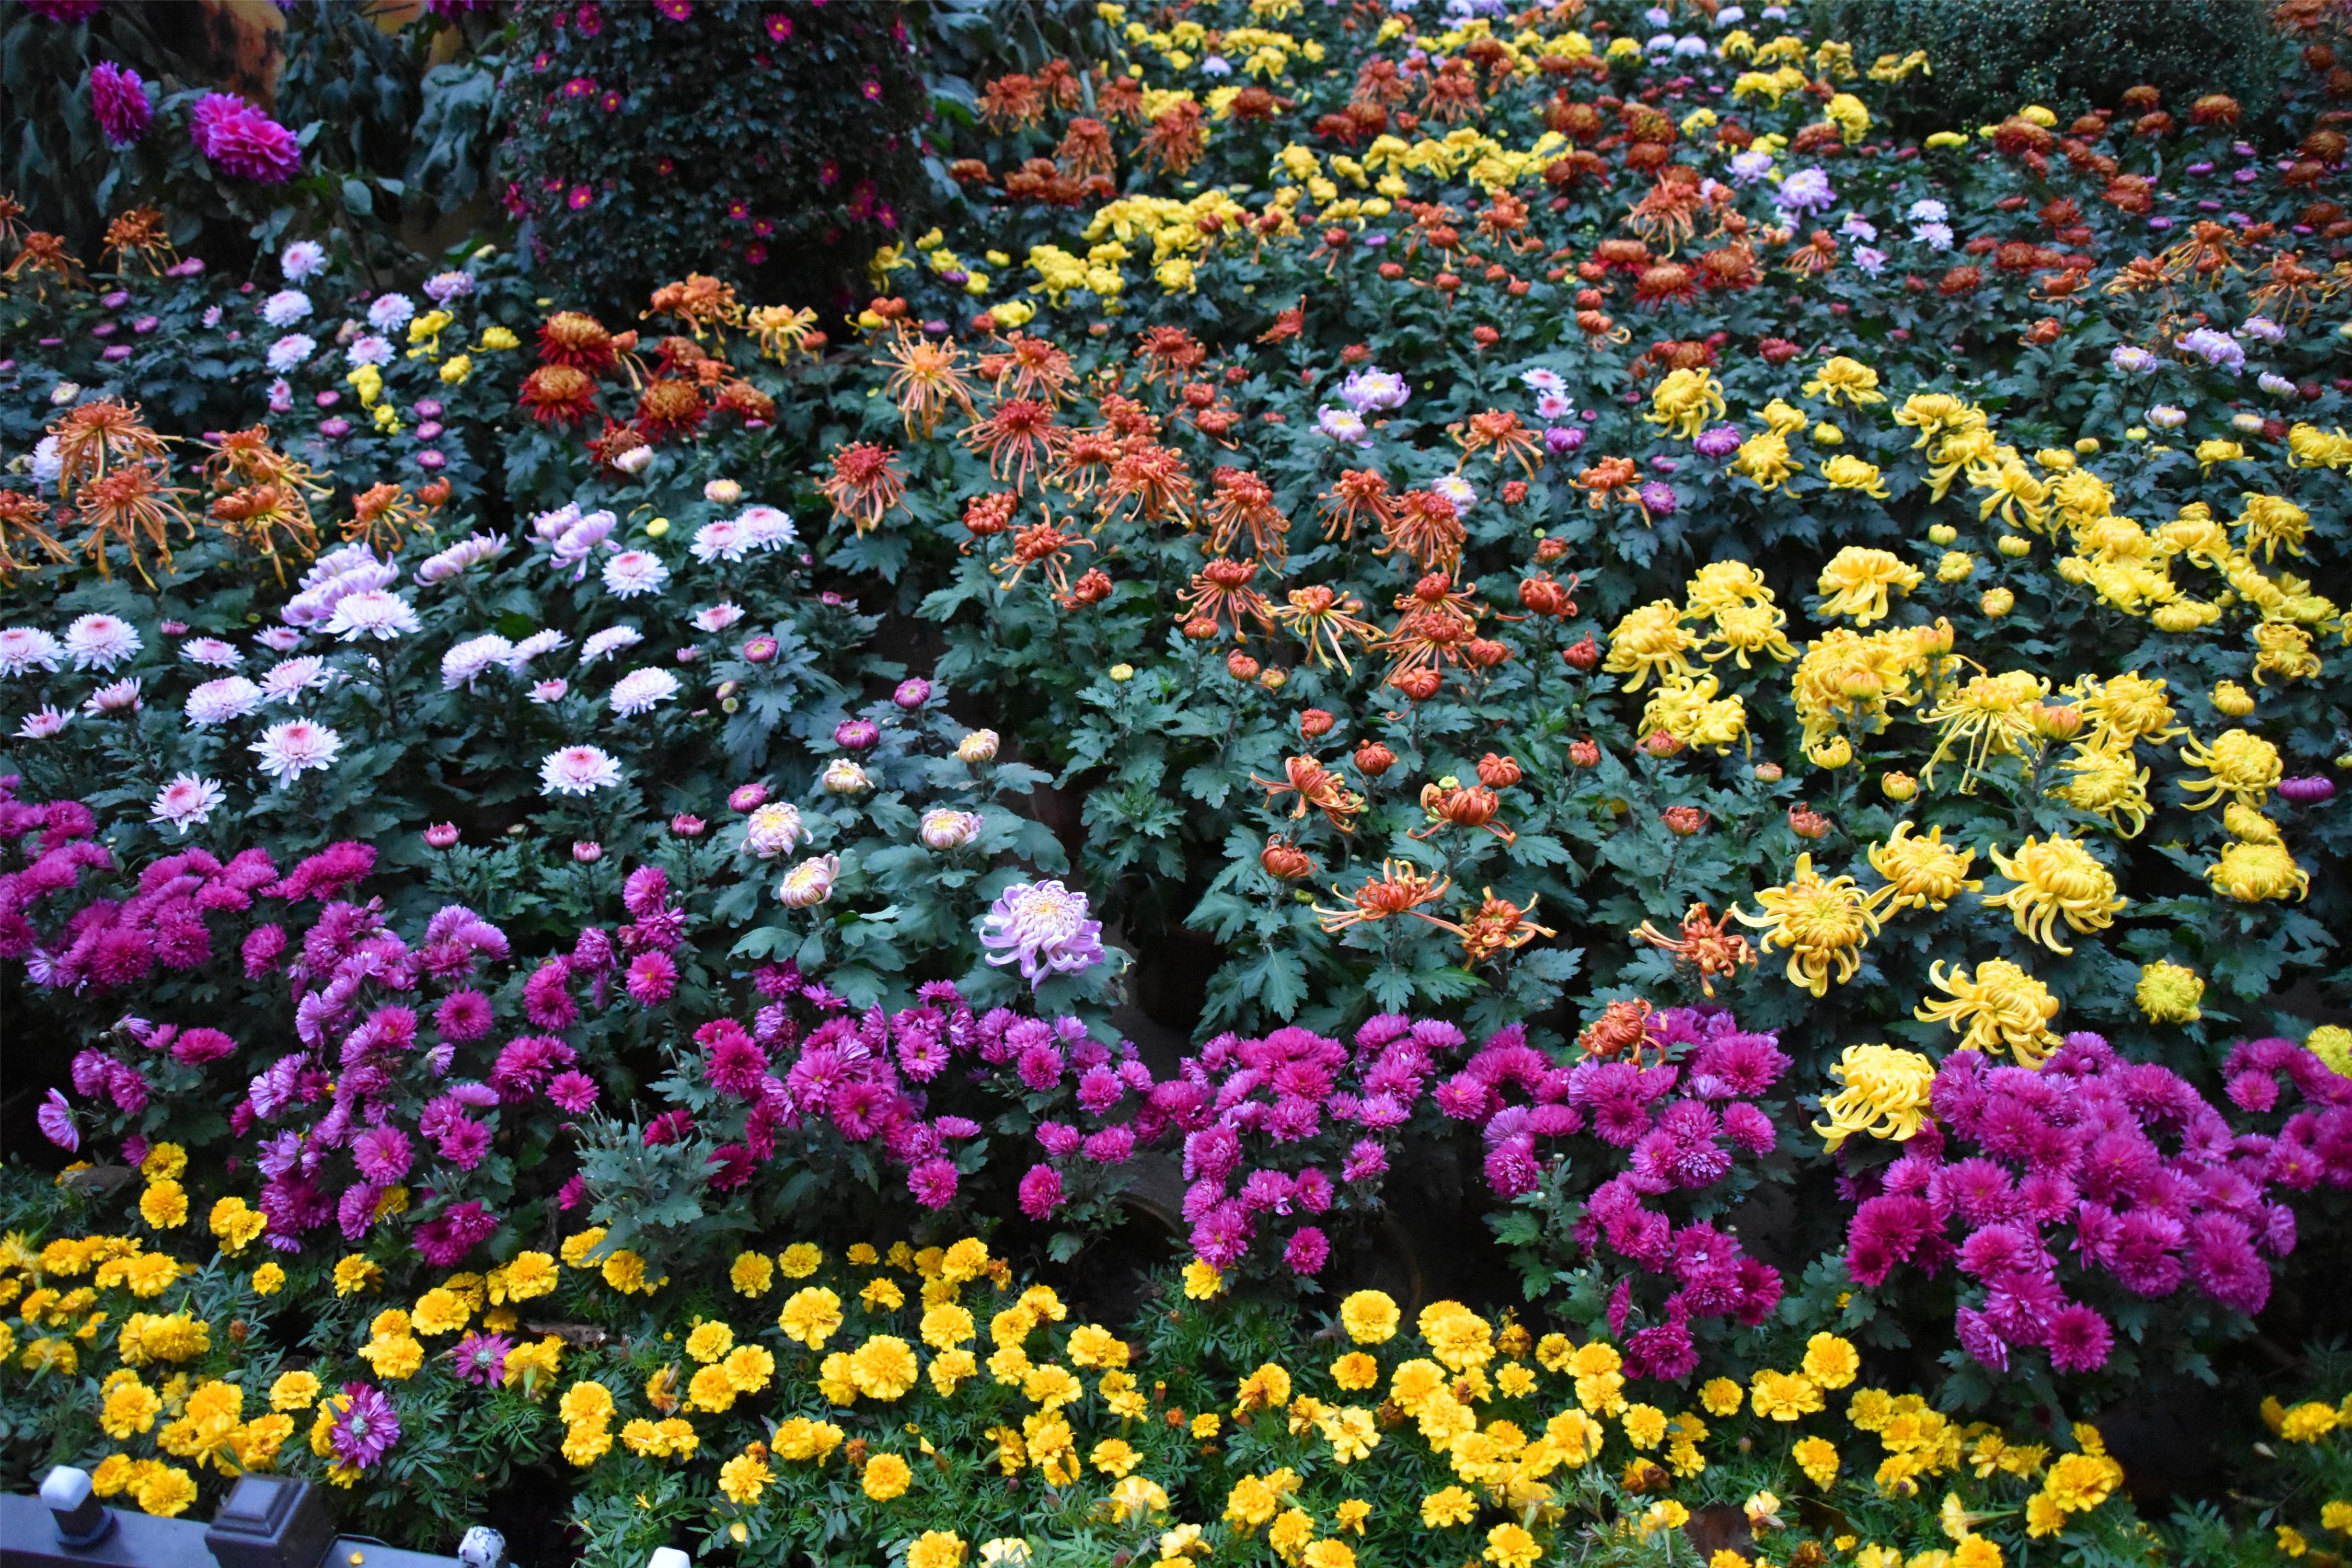 品种和色彩比较罕见的玫瑰花图片_花卉图片_3g图片大全